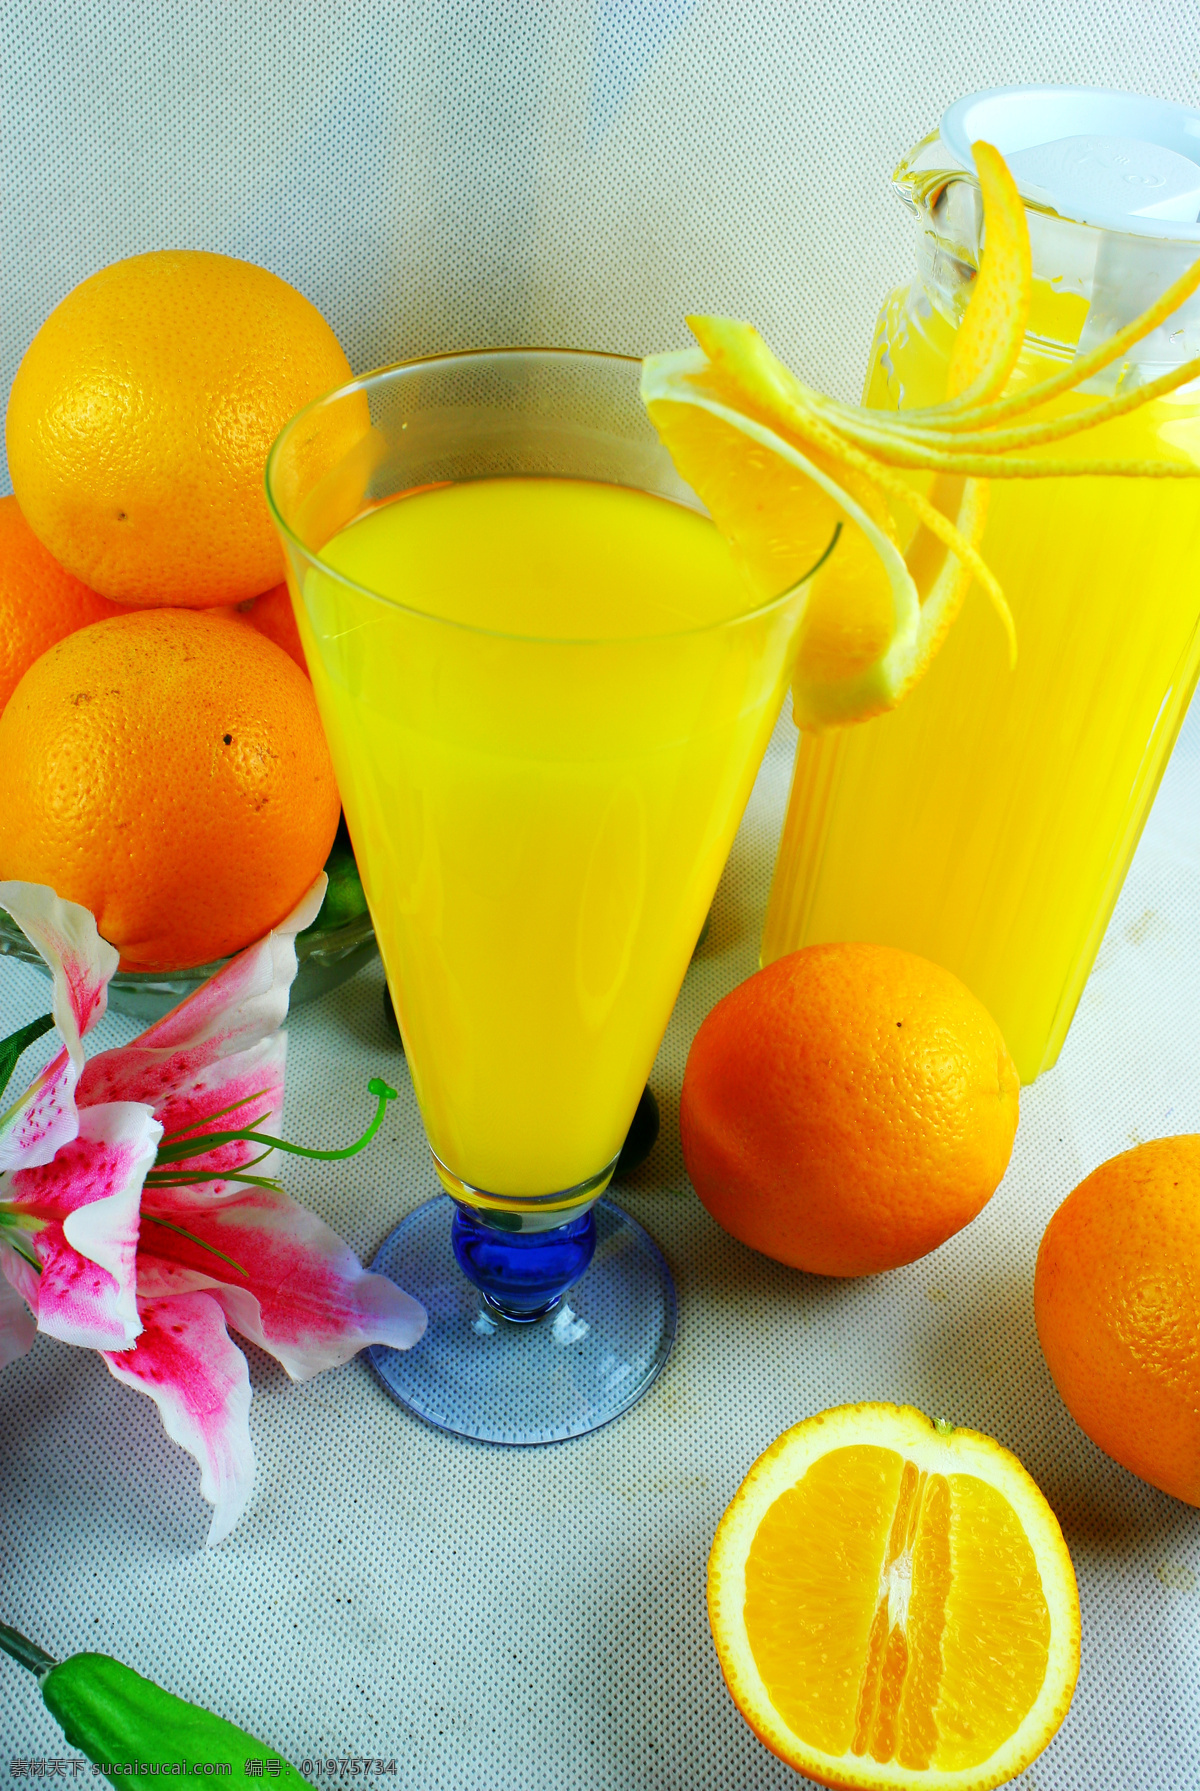 柳橙汁 橙汁 饮料 柳橙 酸甜口味 餐饮美食 饮料酒水